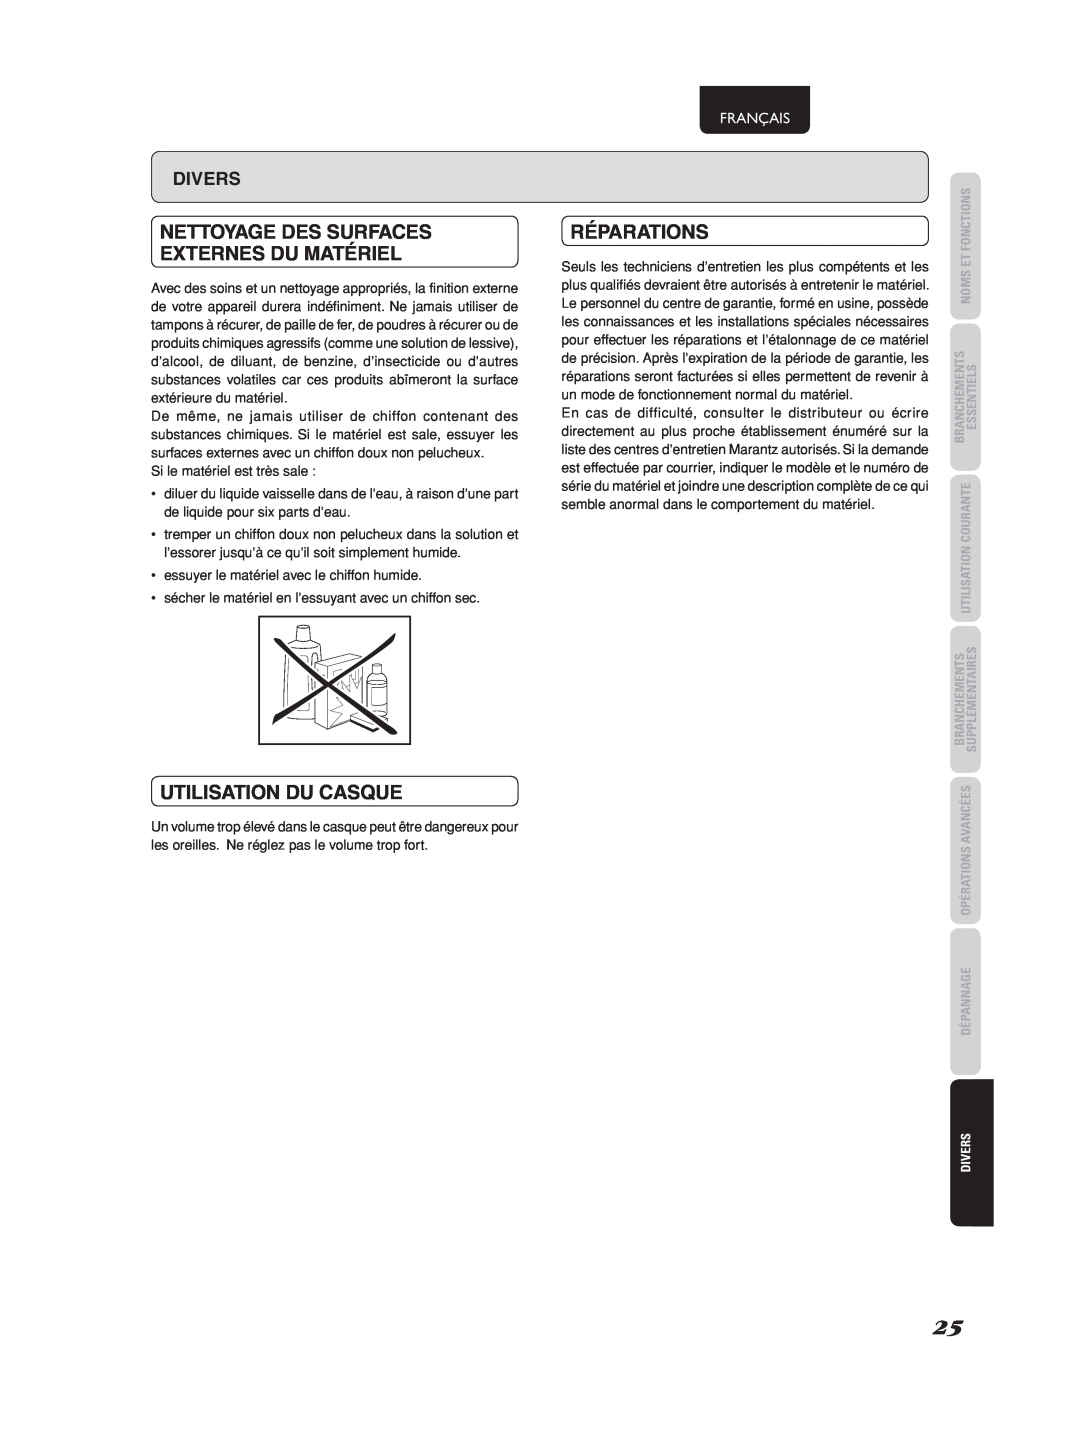 Marantz 541110275035M manual Nettoyage Des Surfaces Externes Du Matériel, Utilisation Du Casque, Réparations, Français 